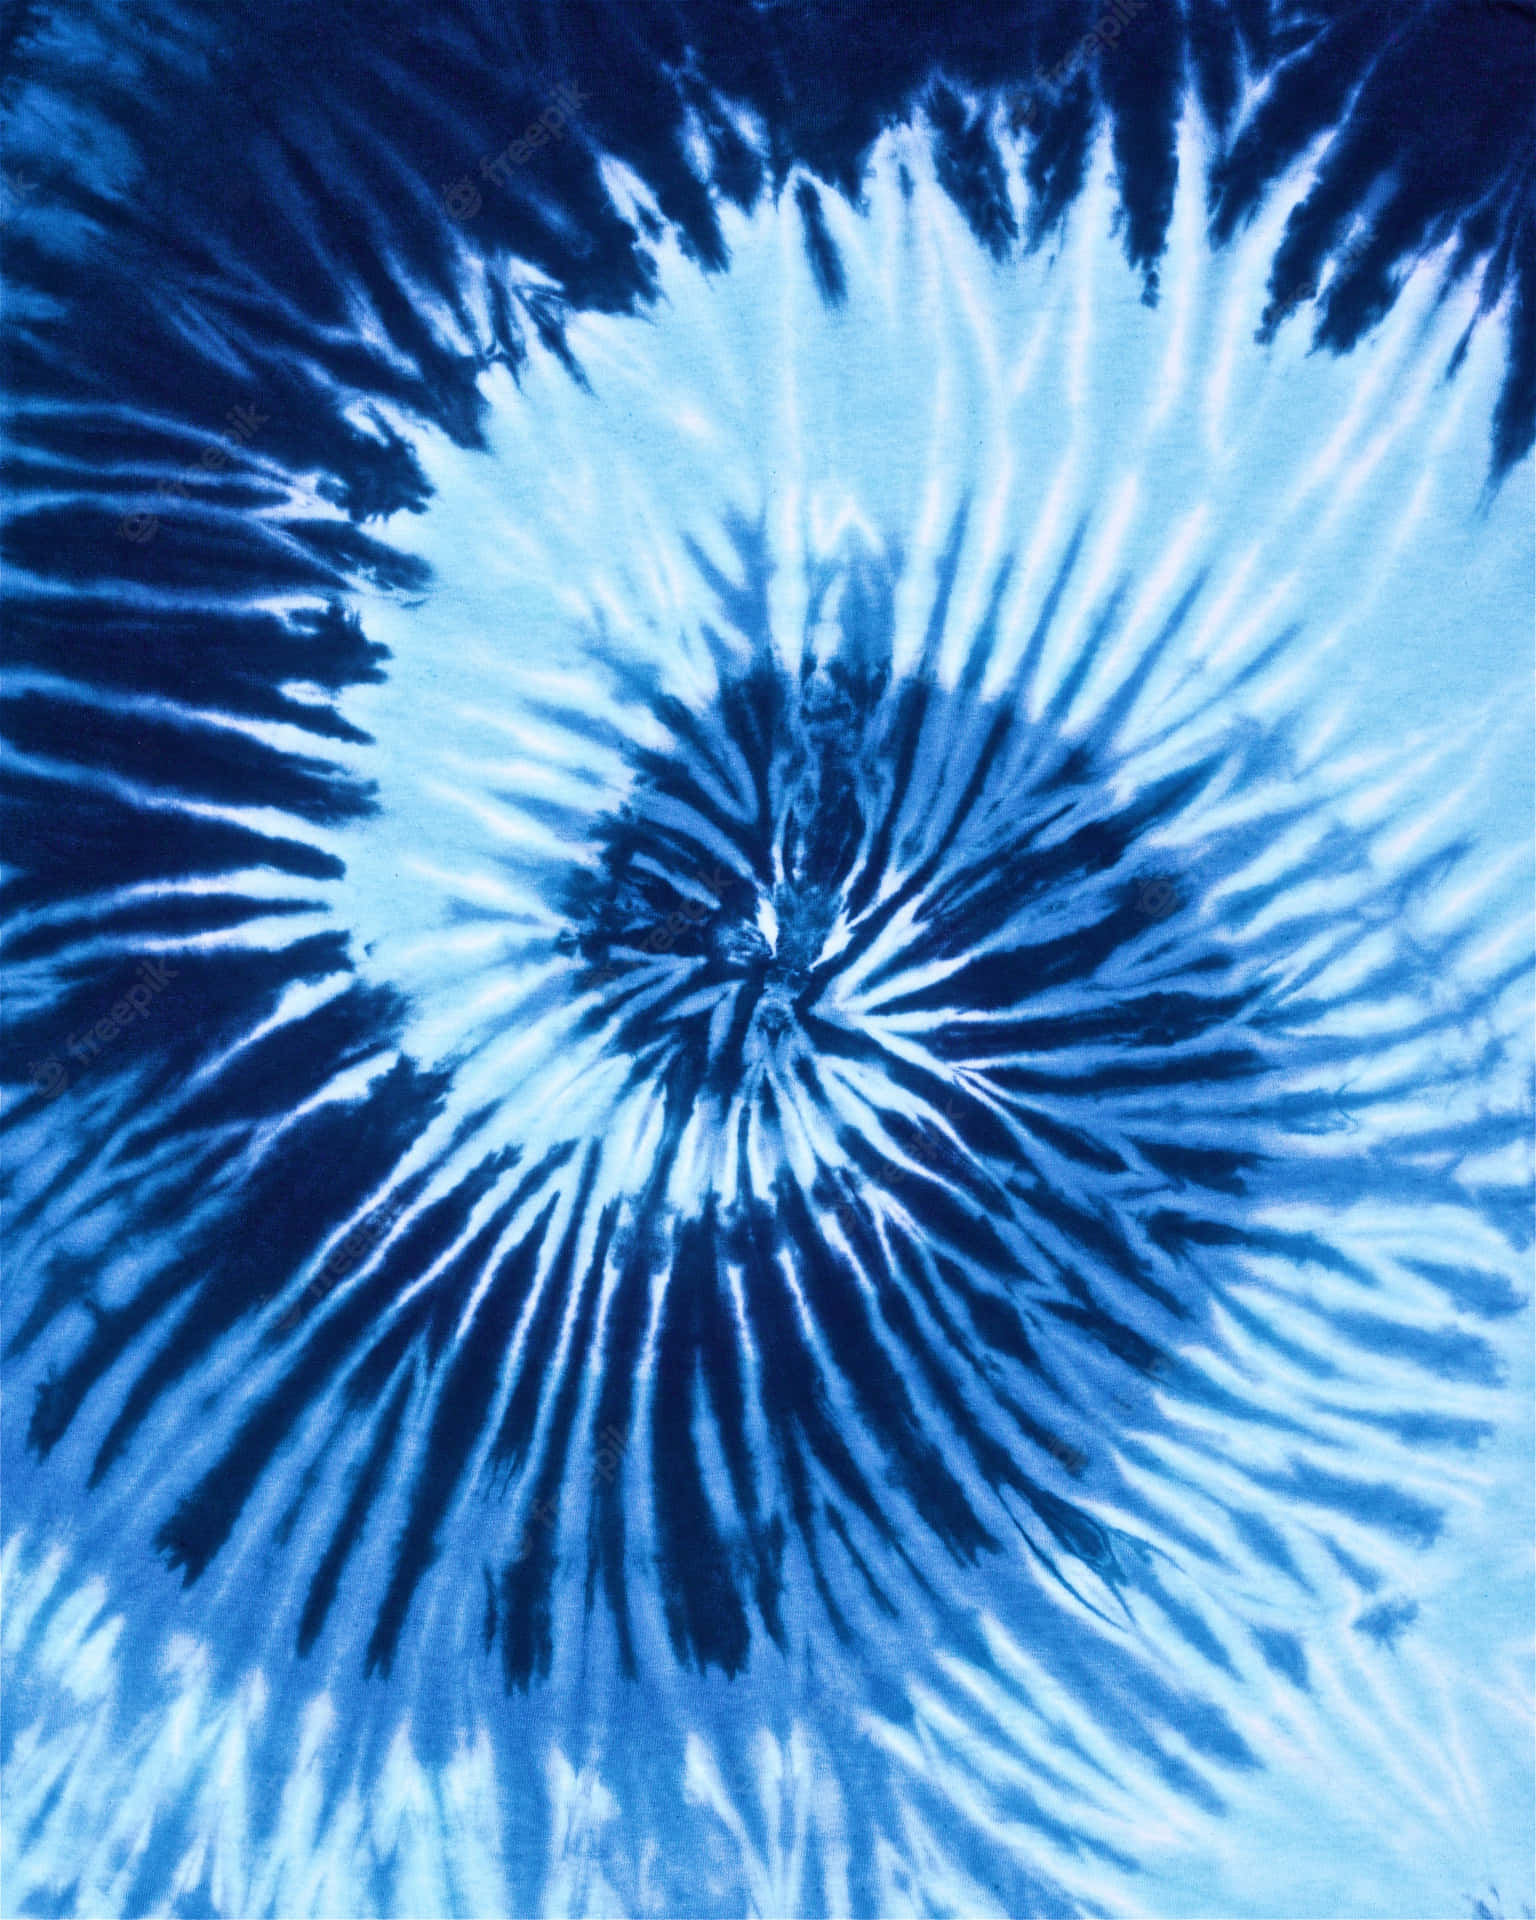 Blue Tie Dye Towel Spiral Pattern Wallpaper